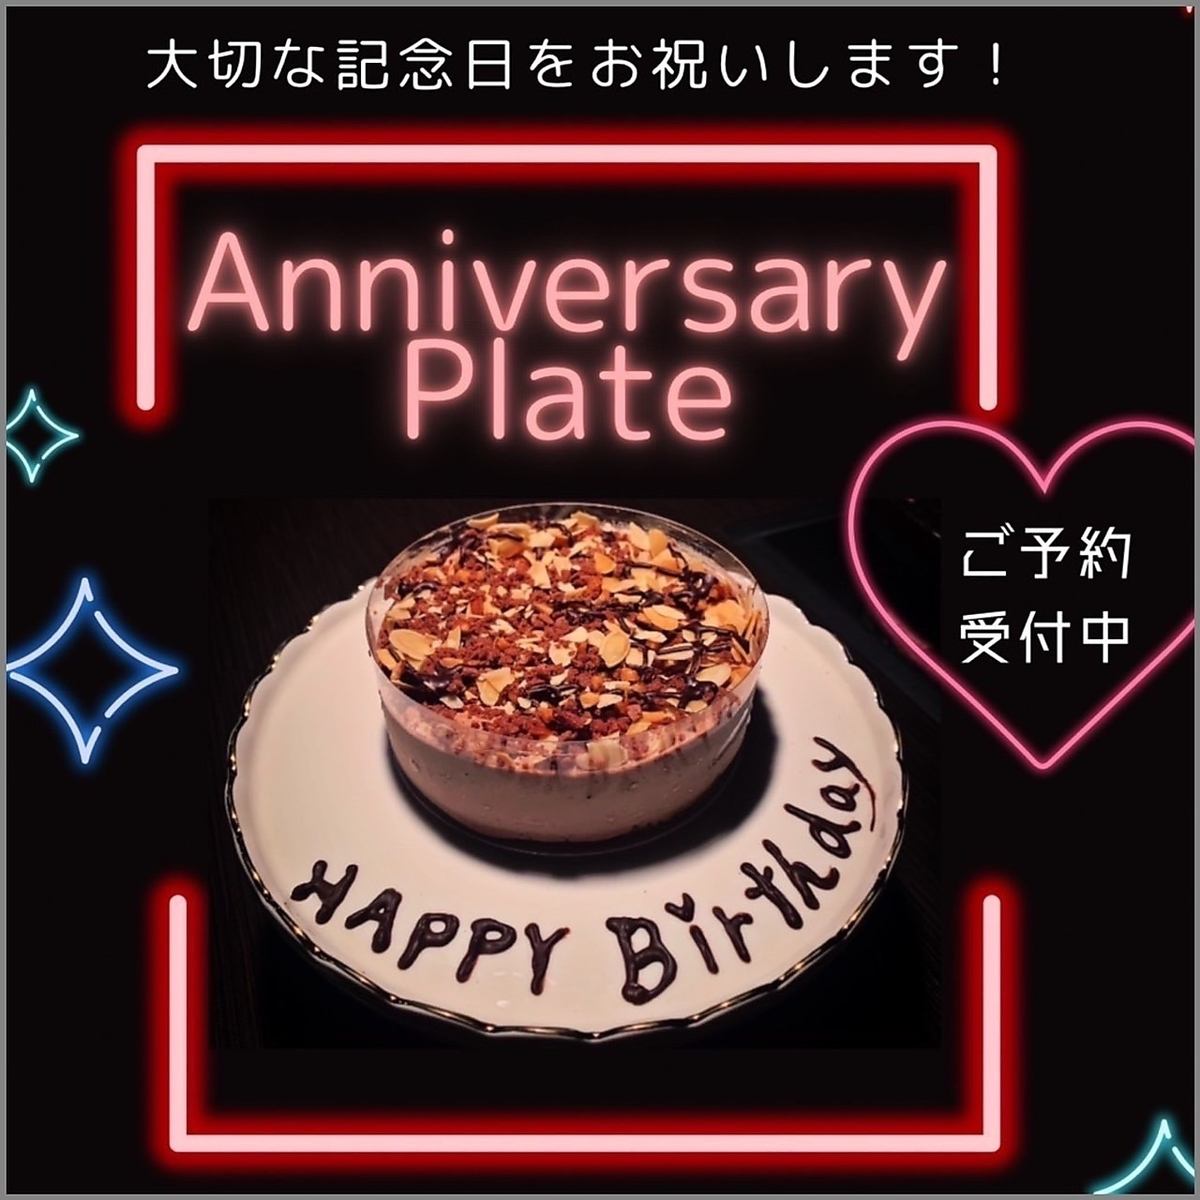 惊喜整个蛋糕1000日元♪仅限前一天预订！